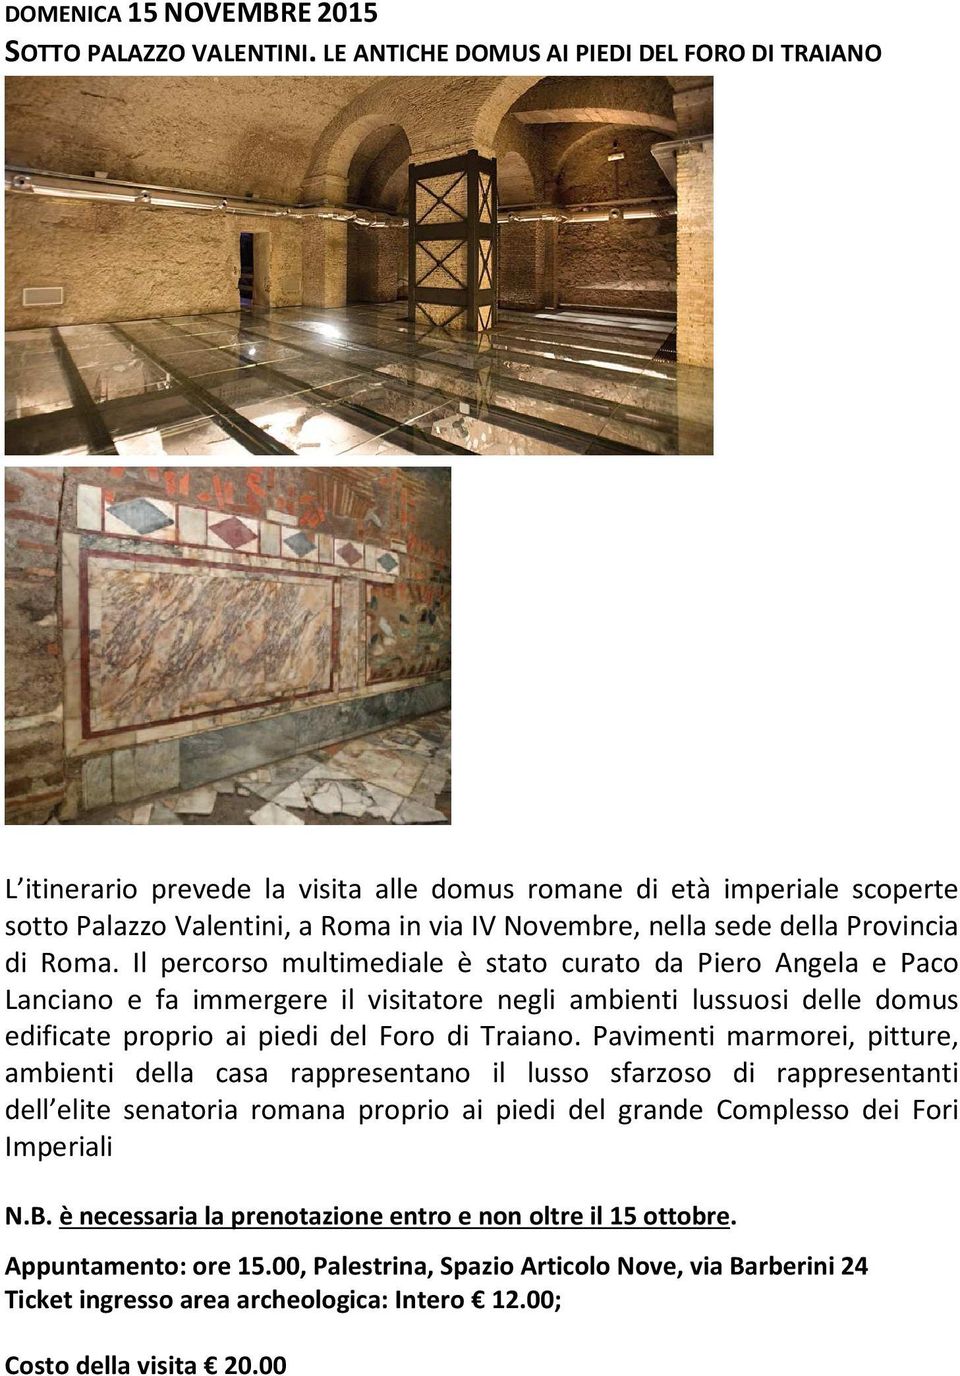 di Roma. Il percorso multimediale è stato curato da Piero Angela e Paco Lanciano e fa immergere il visitatore negli ambienti lussuosi delle domus edificate proprio ai piedi del Foro di Traiano.